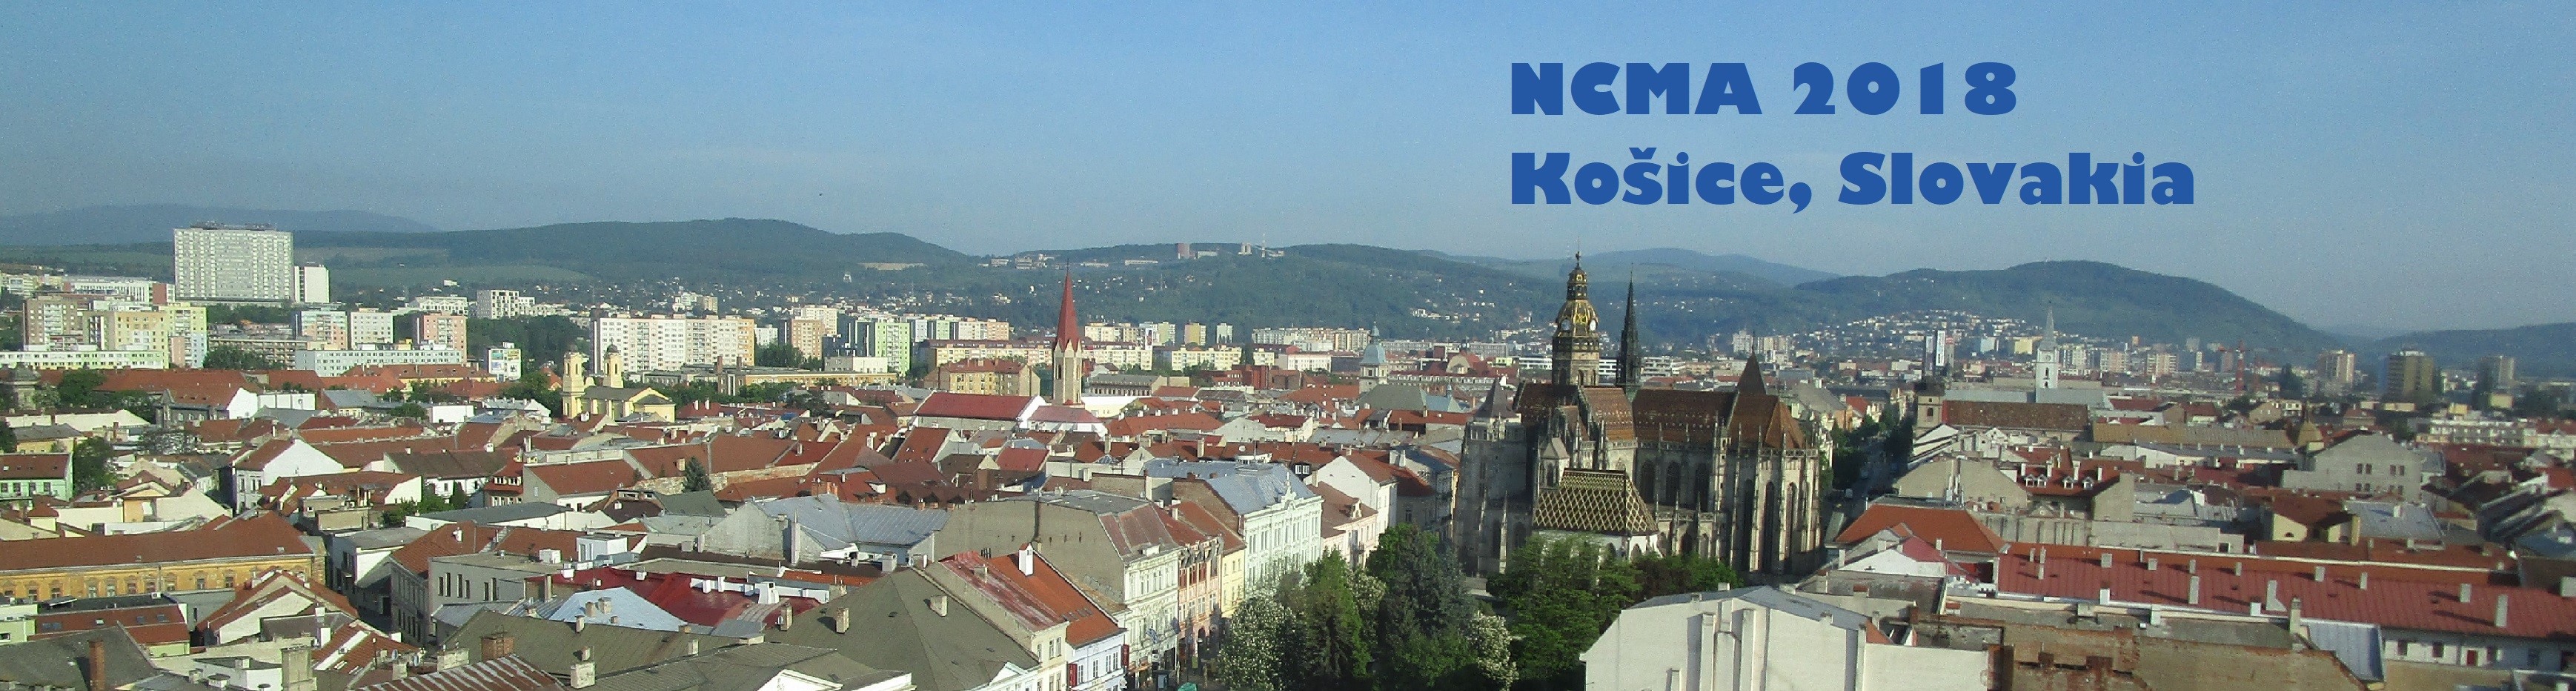 NCMA 2018, Kosice, Slovakia